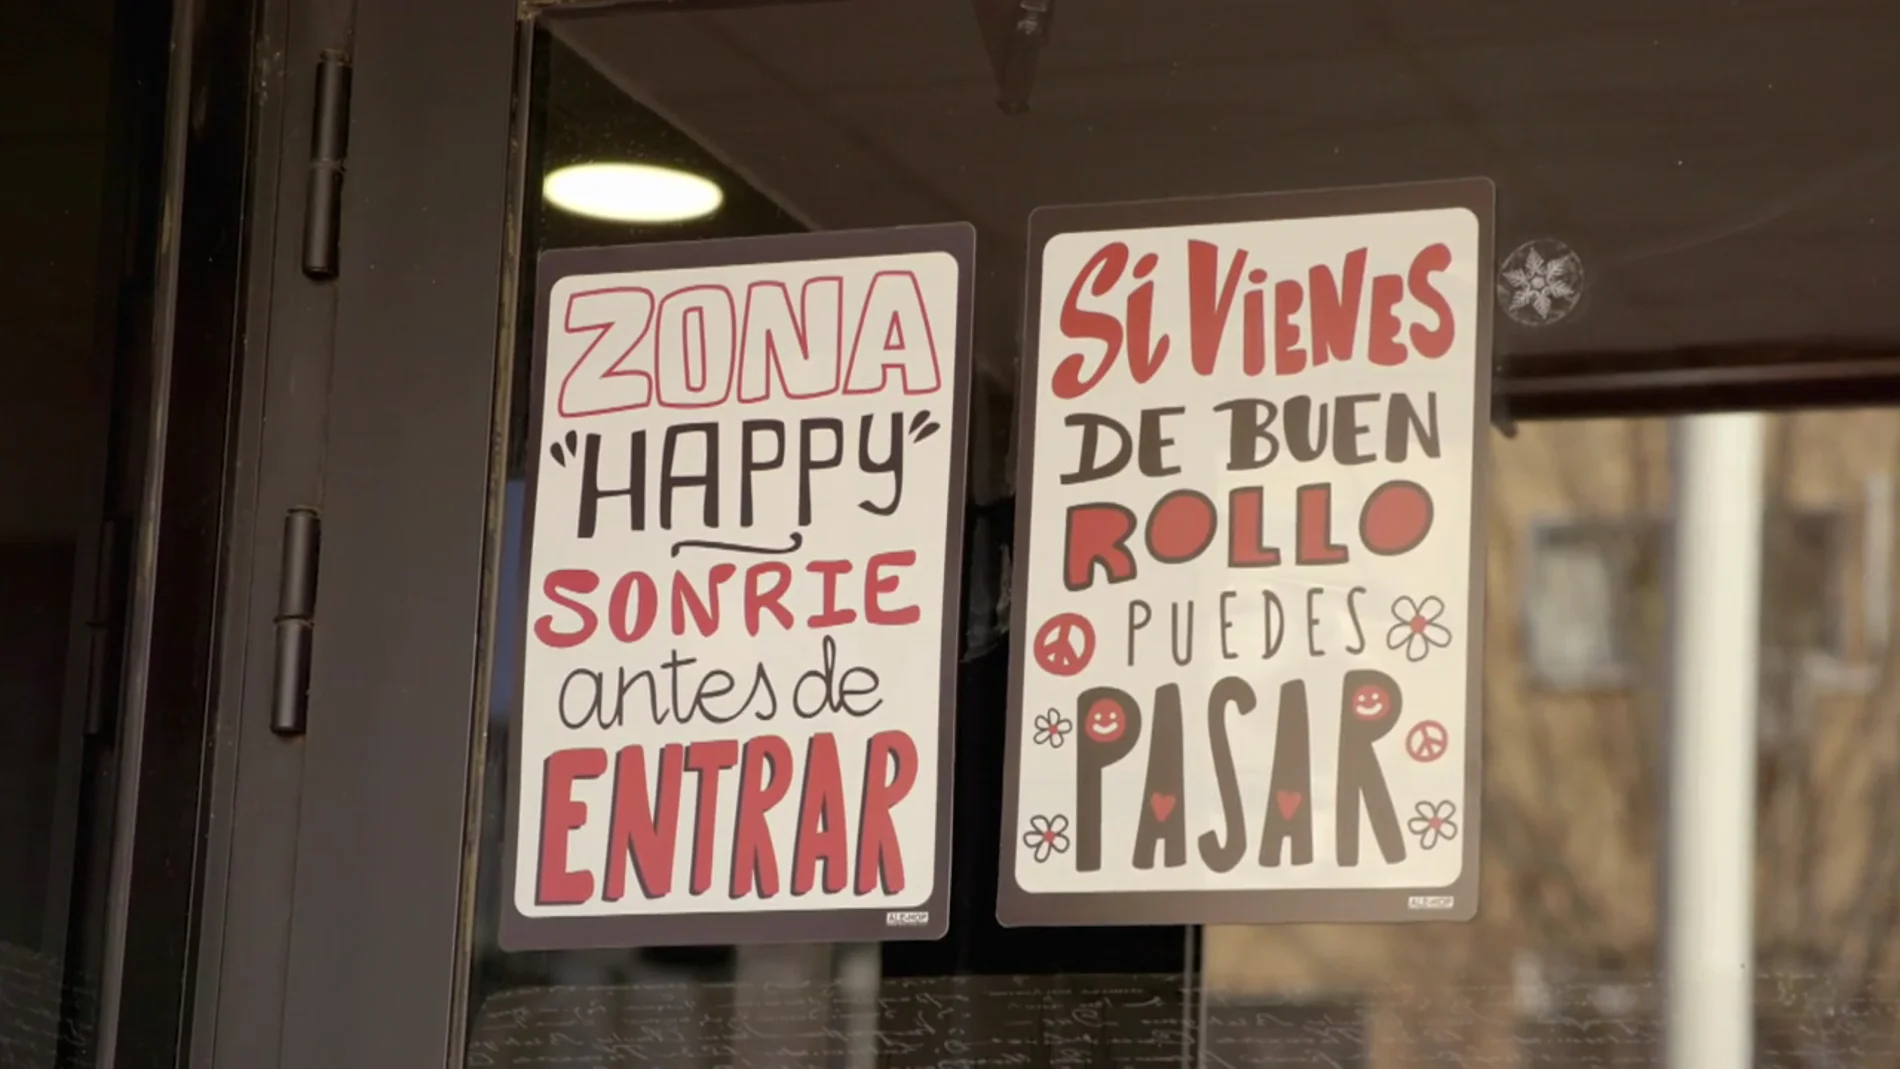 "Zona happy": el cartel de bienvenida de 'Los 5 sentidos' contrasta con cómo reciben a Alberto Chicote